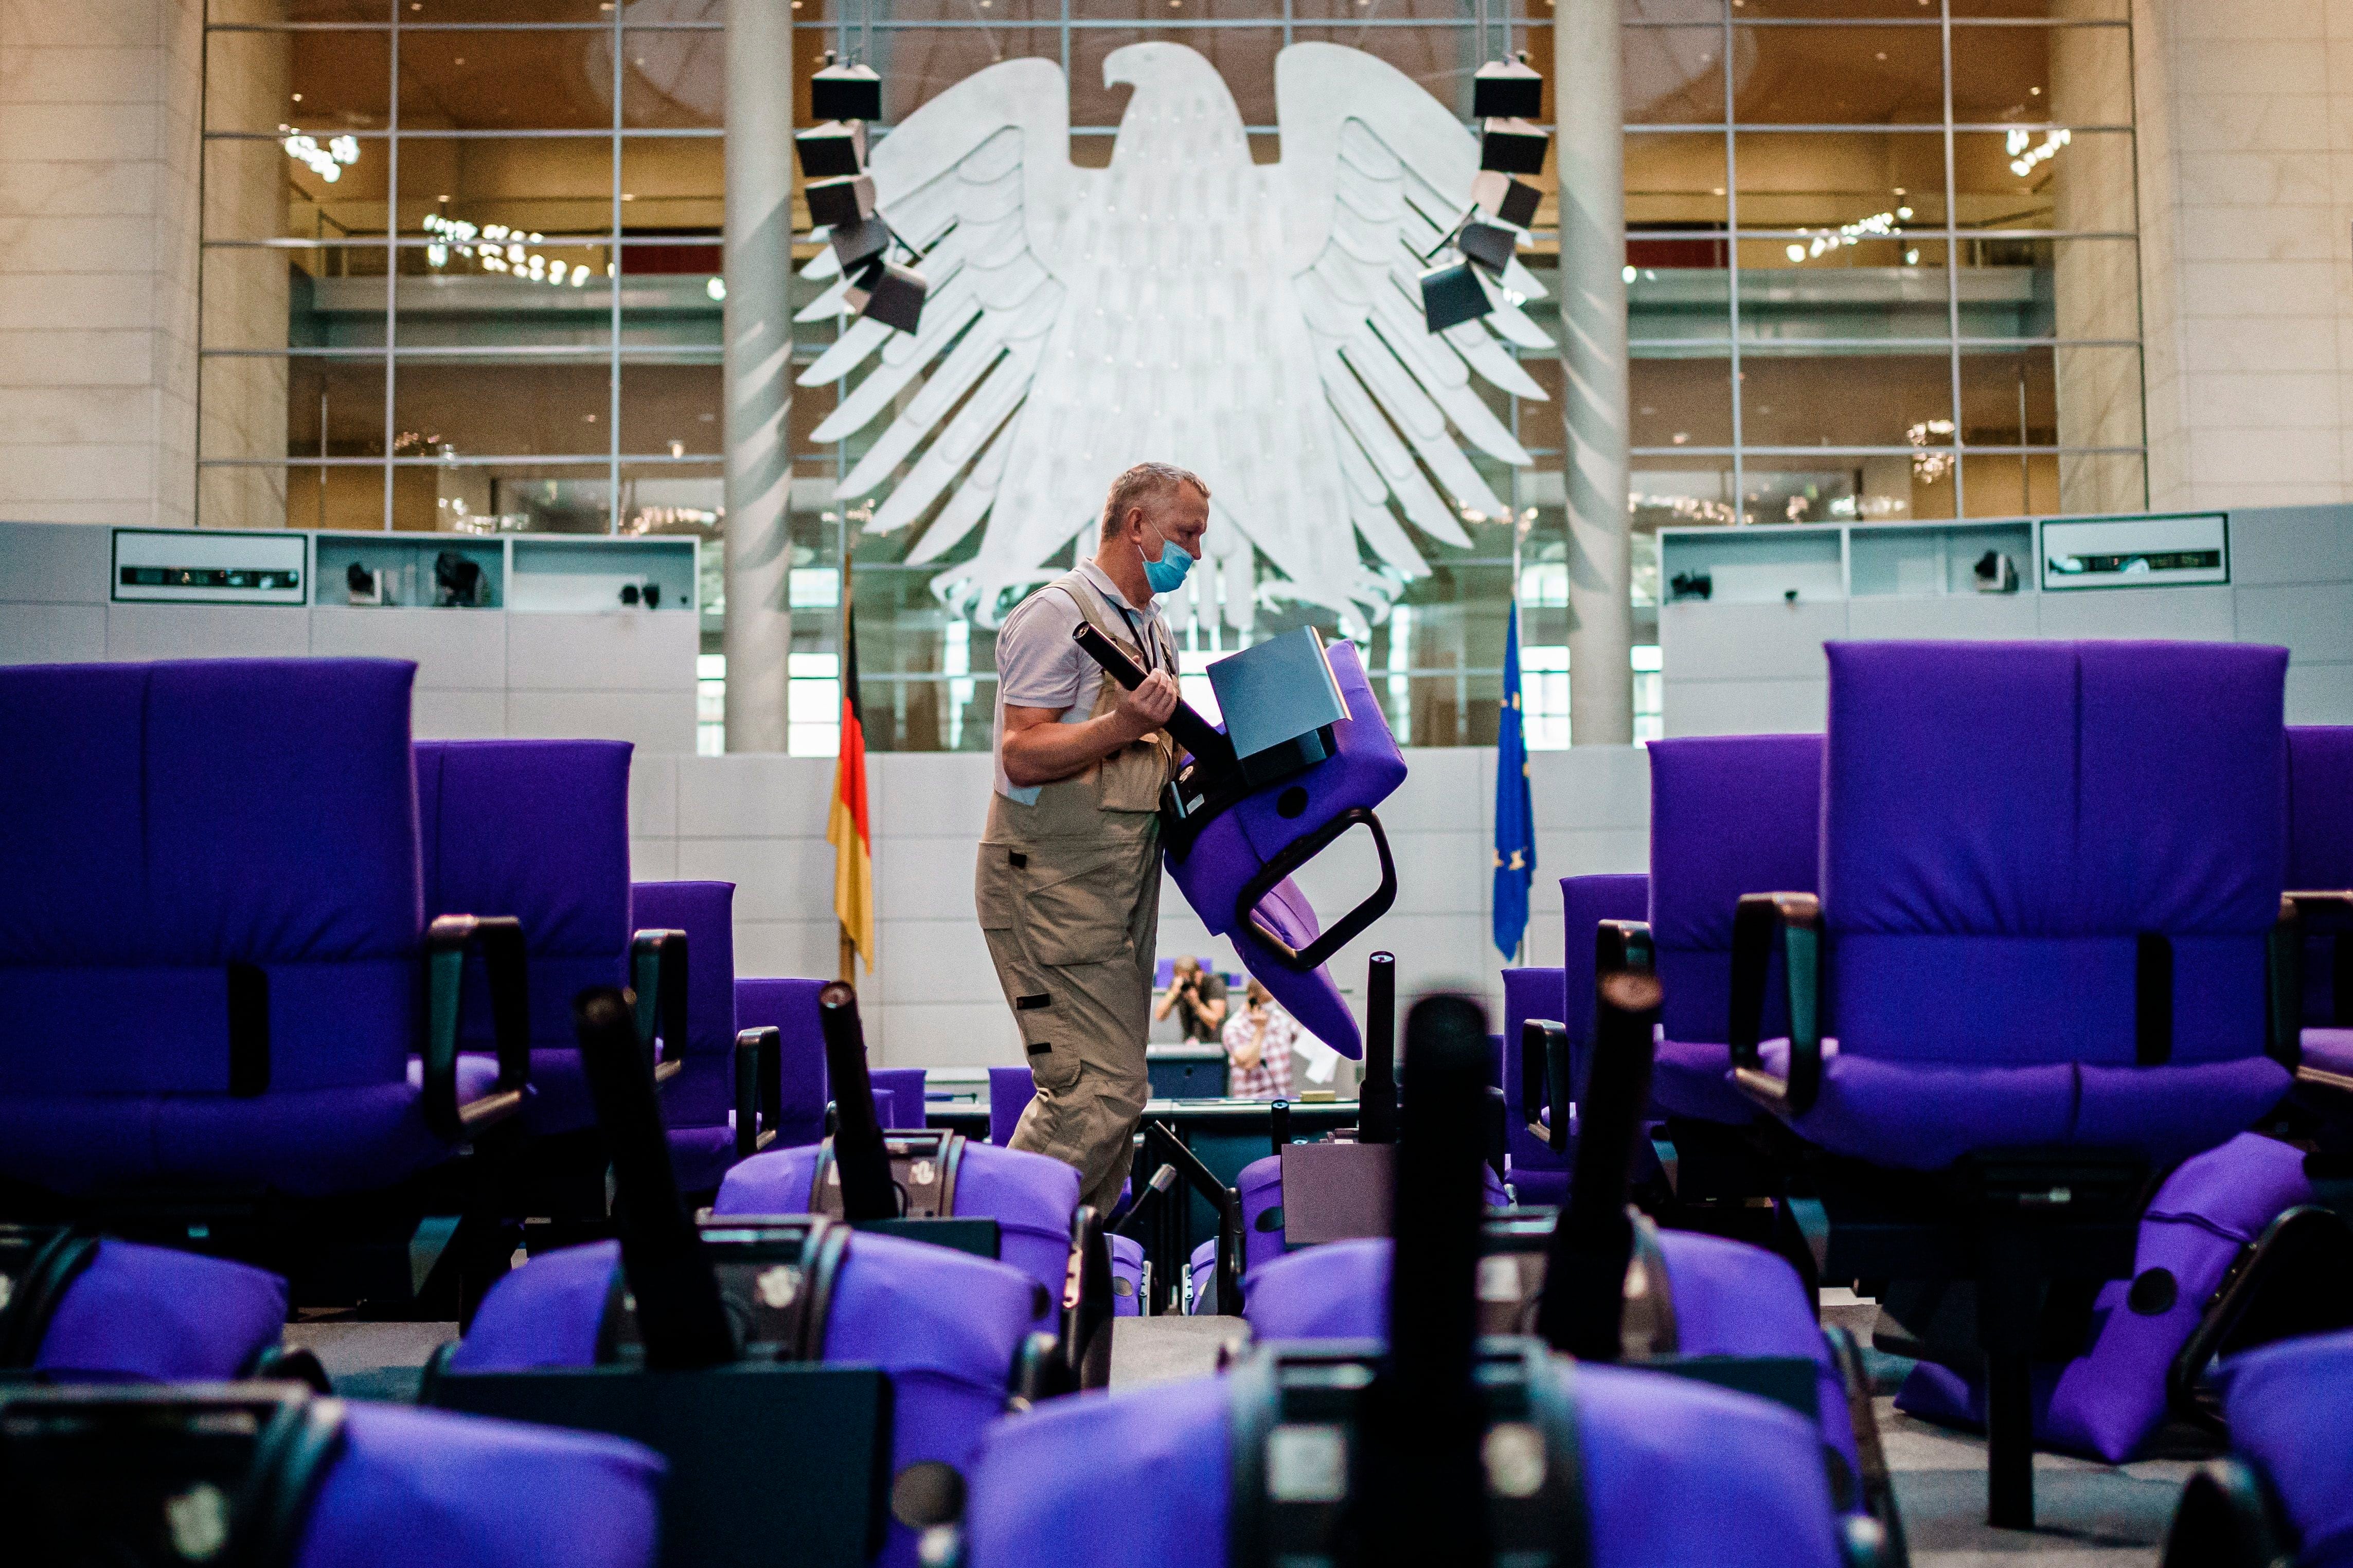 Un empleado del Bundestag reorganizaba los asientos en Parlamento alemán para adecuarlos a la nueva composición resultante de las elecciones celebradas el pasado mes de septiembre. EFE/EPA/CLEMENS BILAN